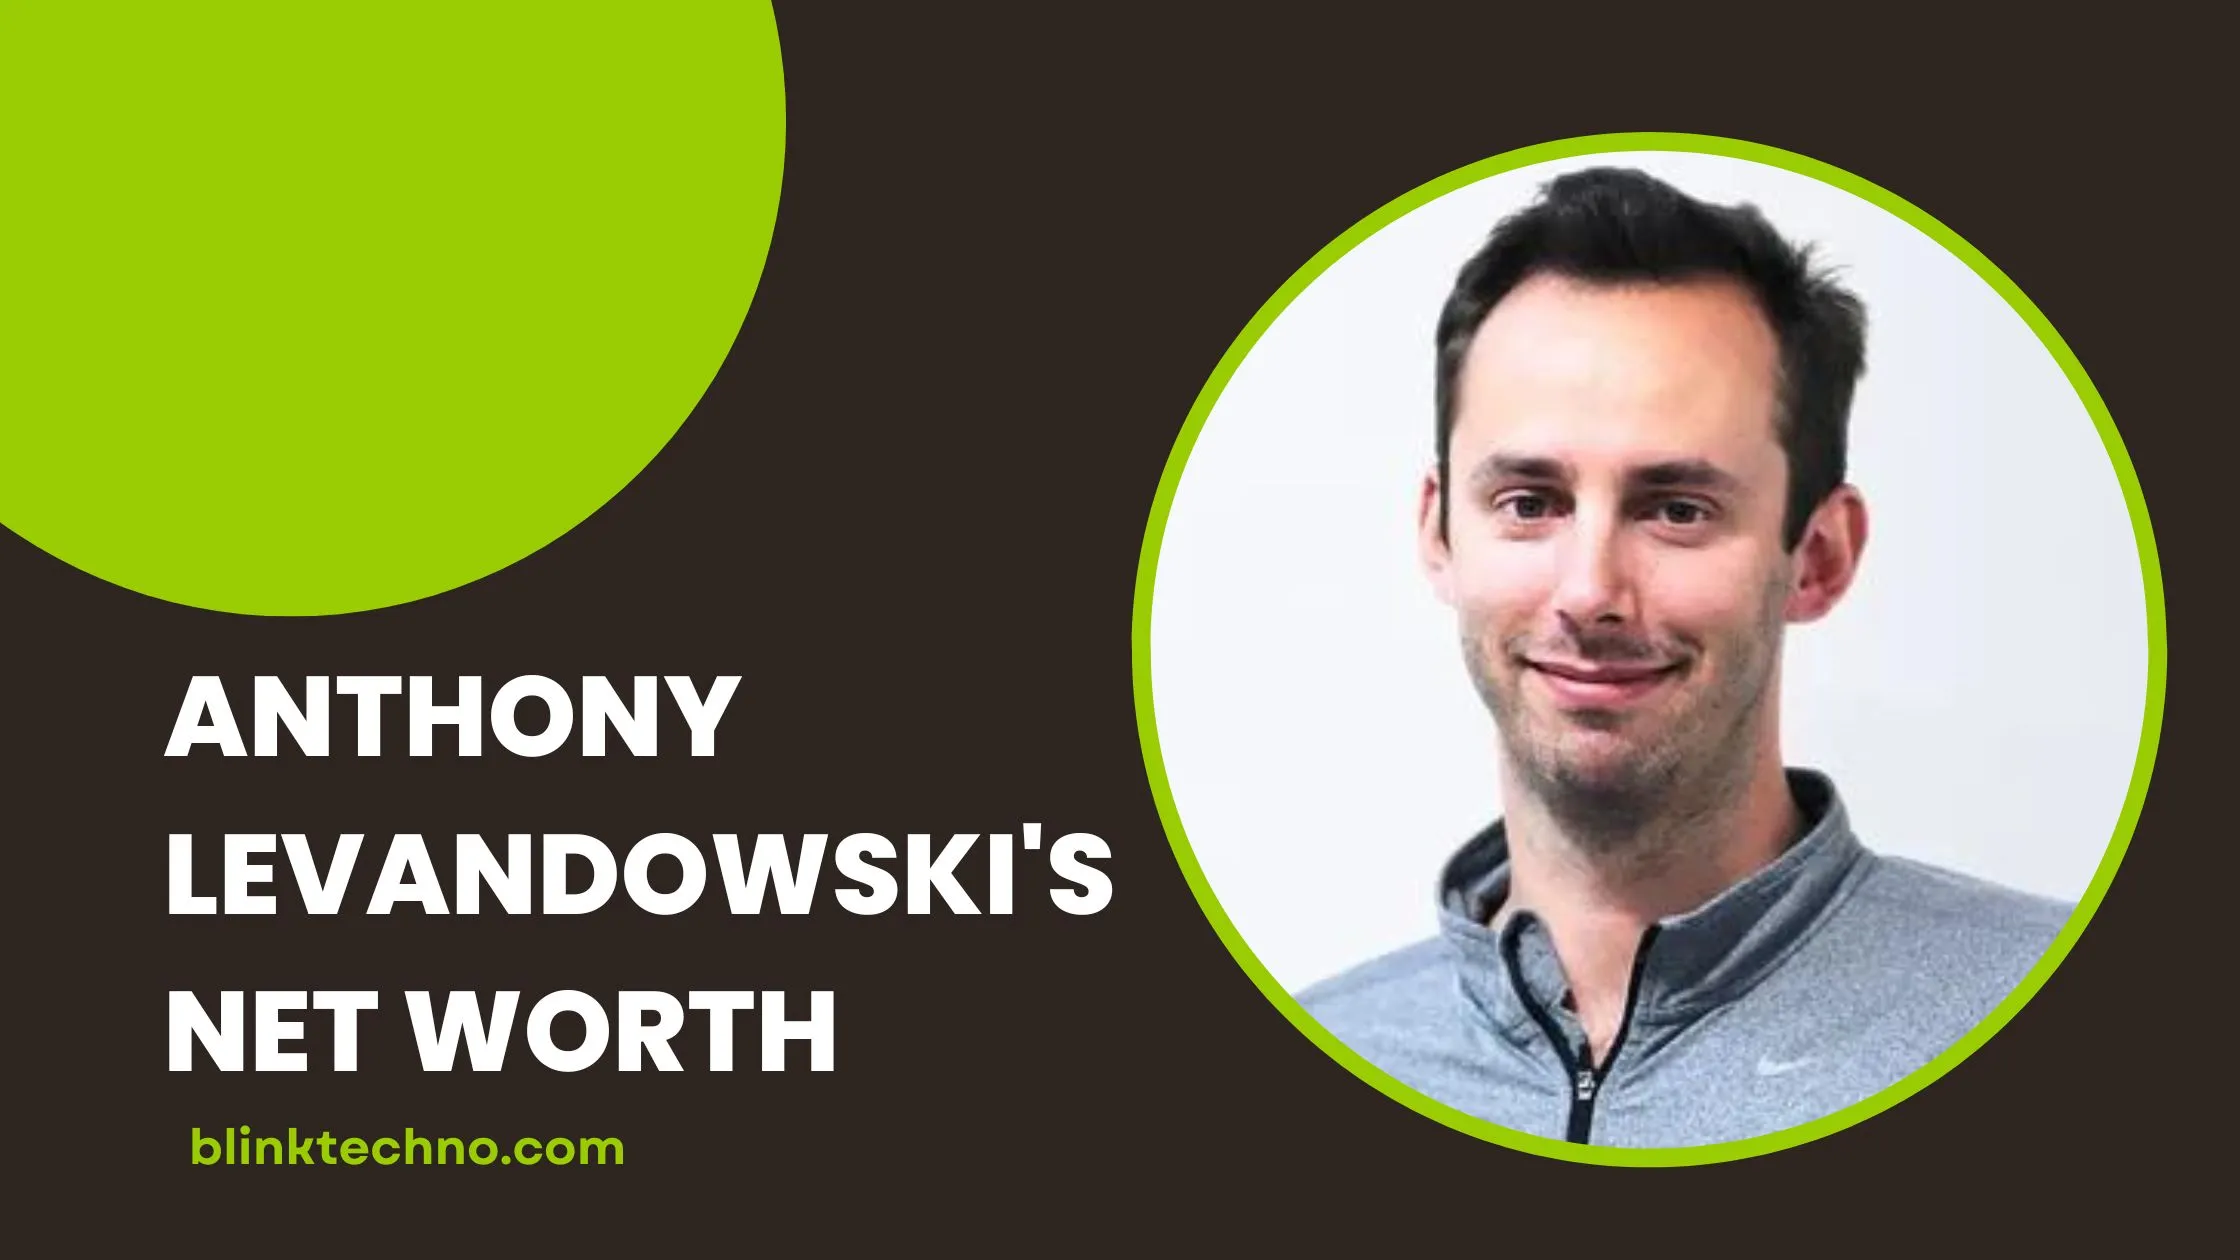 Anthony Levandowski Net Worth